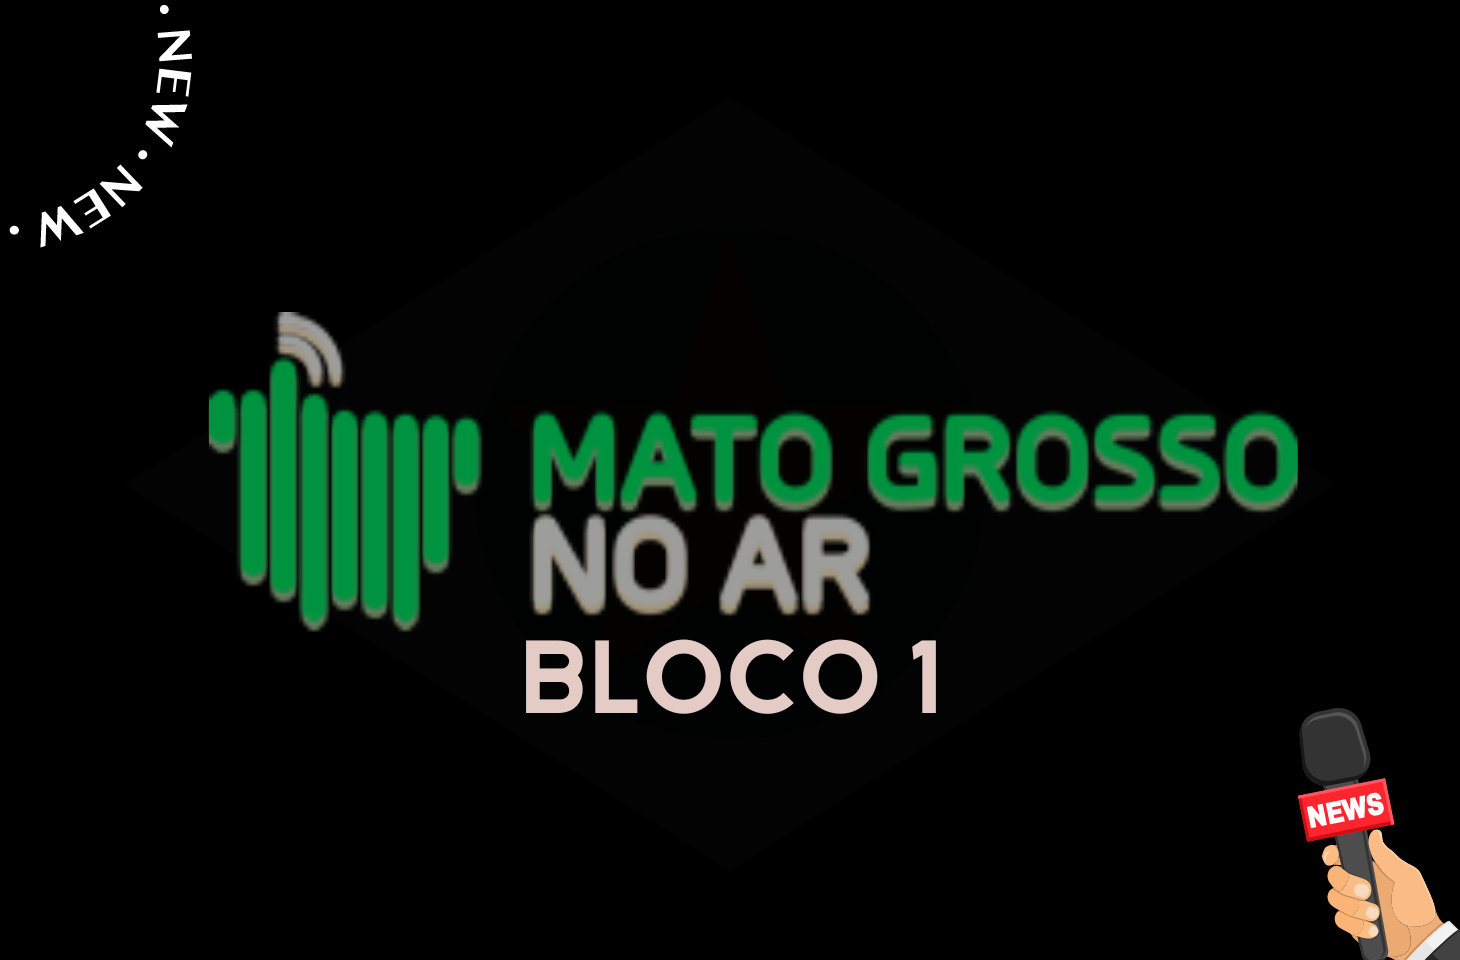 Jornal Mato Grosso No Ar - Bloco 1 - 09-02